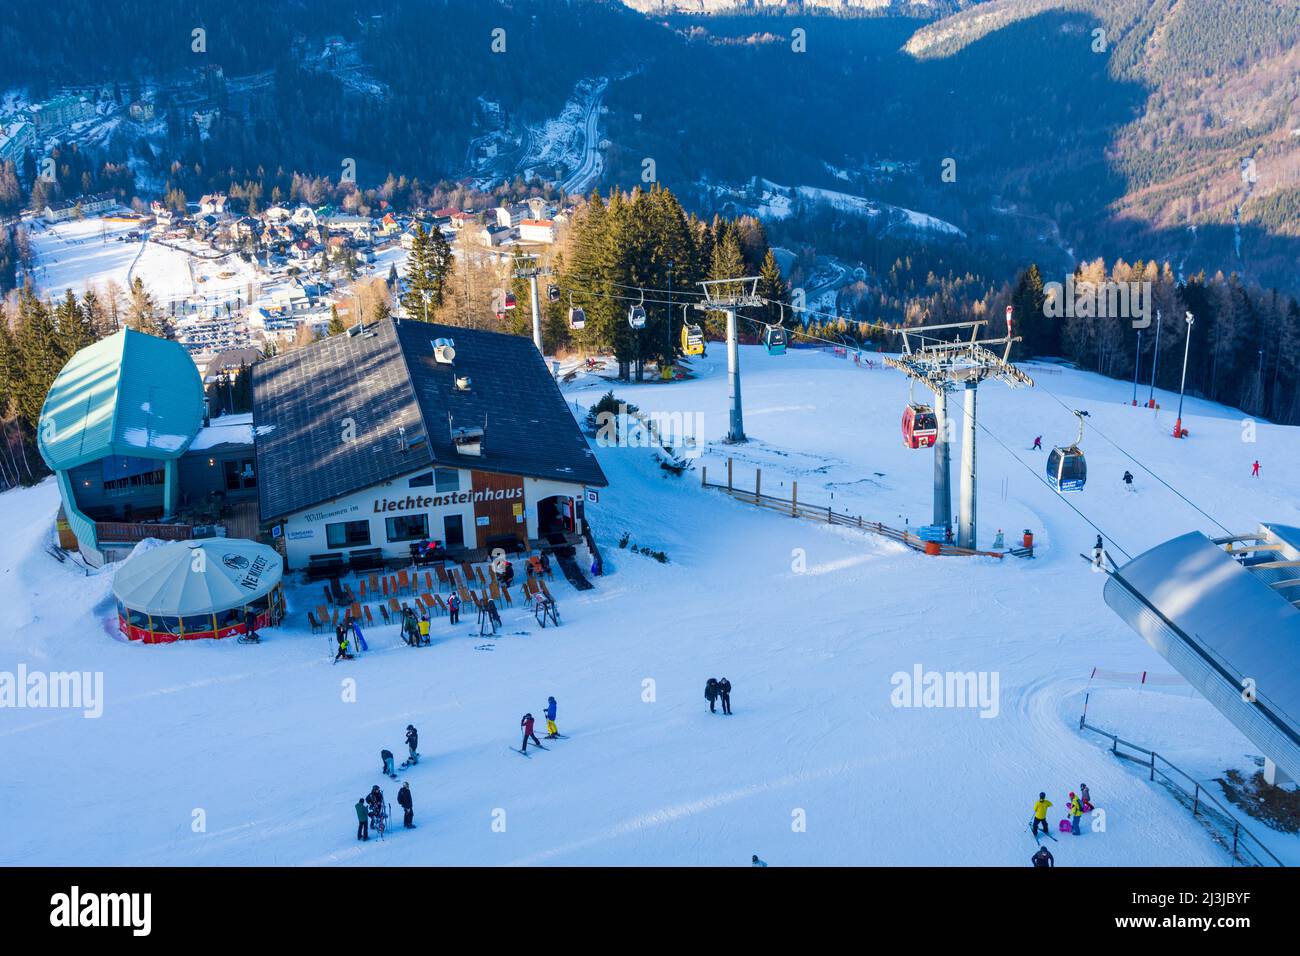 Semmering, Ski area Zauberberg Semmering - Hirschenkogel, downhill skiing, skiers, mountain station ski lift, restaurant Liechtensteinhaus in the Vienna Alps, Lower Austria, Austria Stock Photo